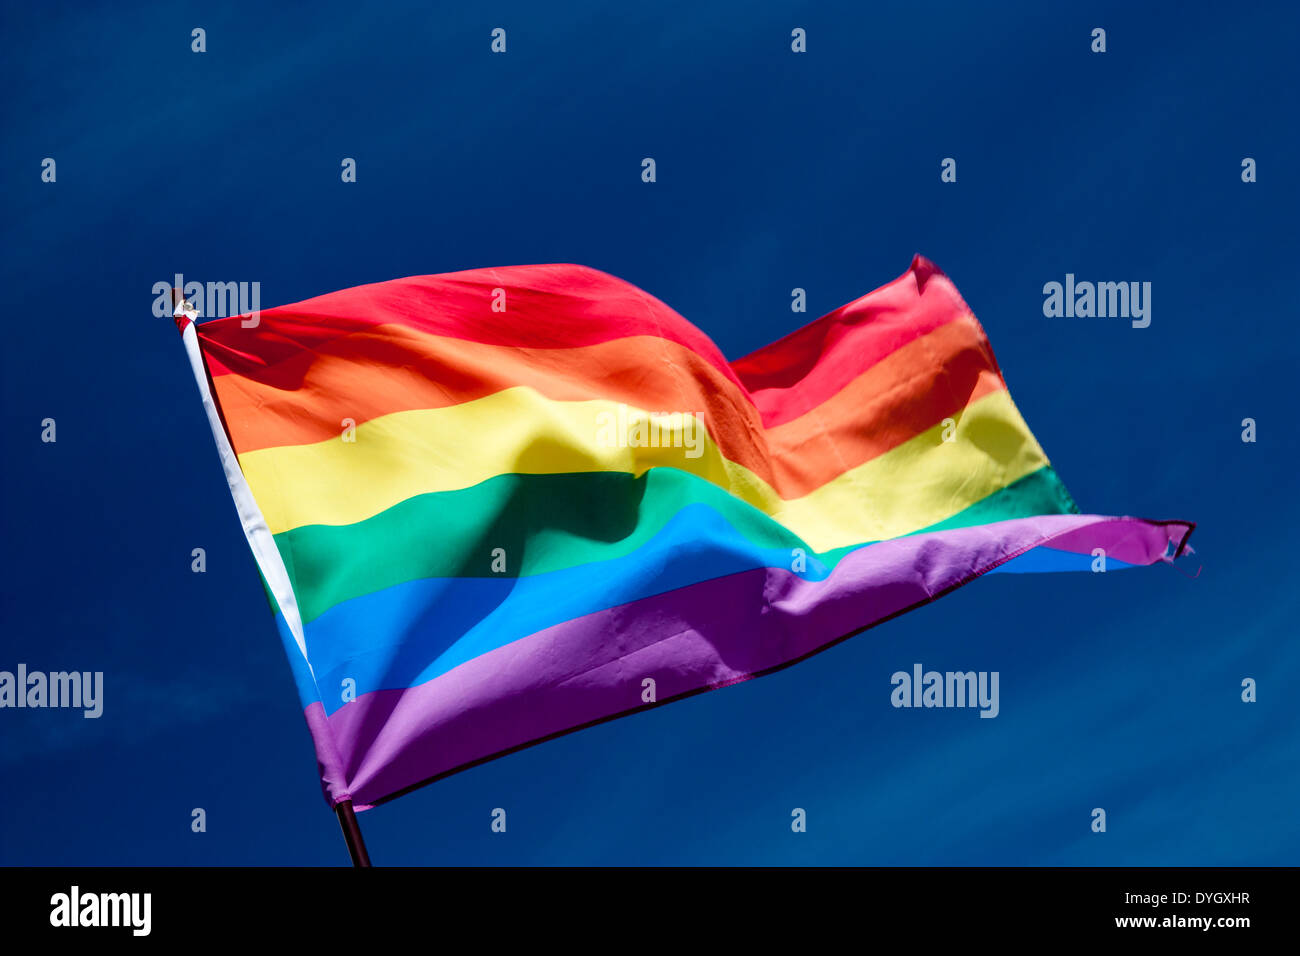 Rainbow flag against blue sky Stock Photo